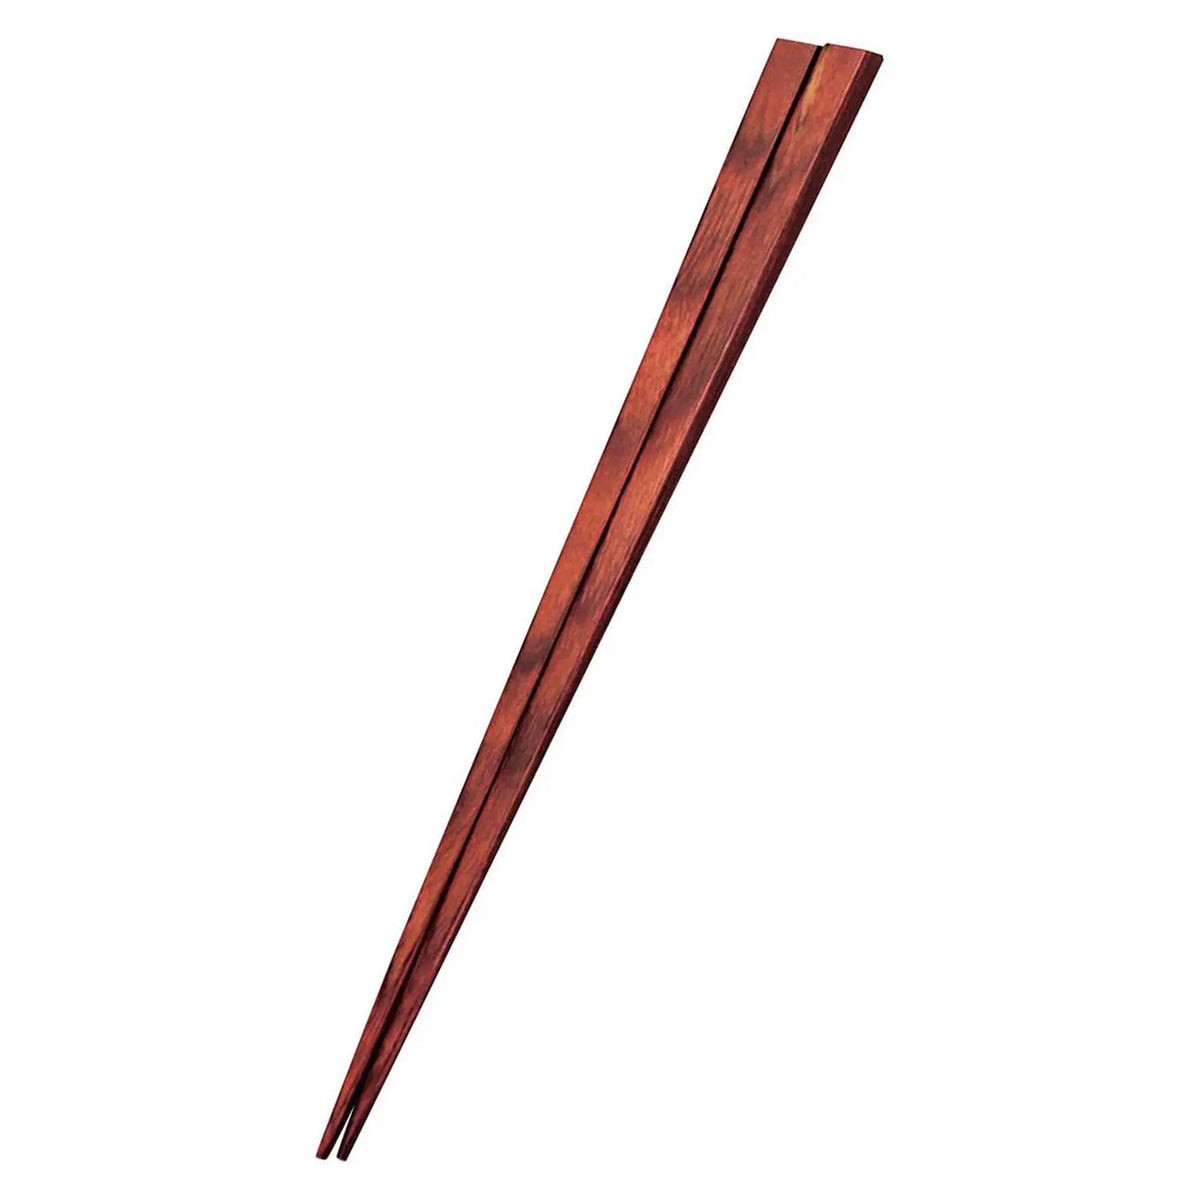 EBM Birch Laminated Round Tip Chopsticks 23cm